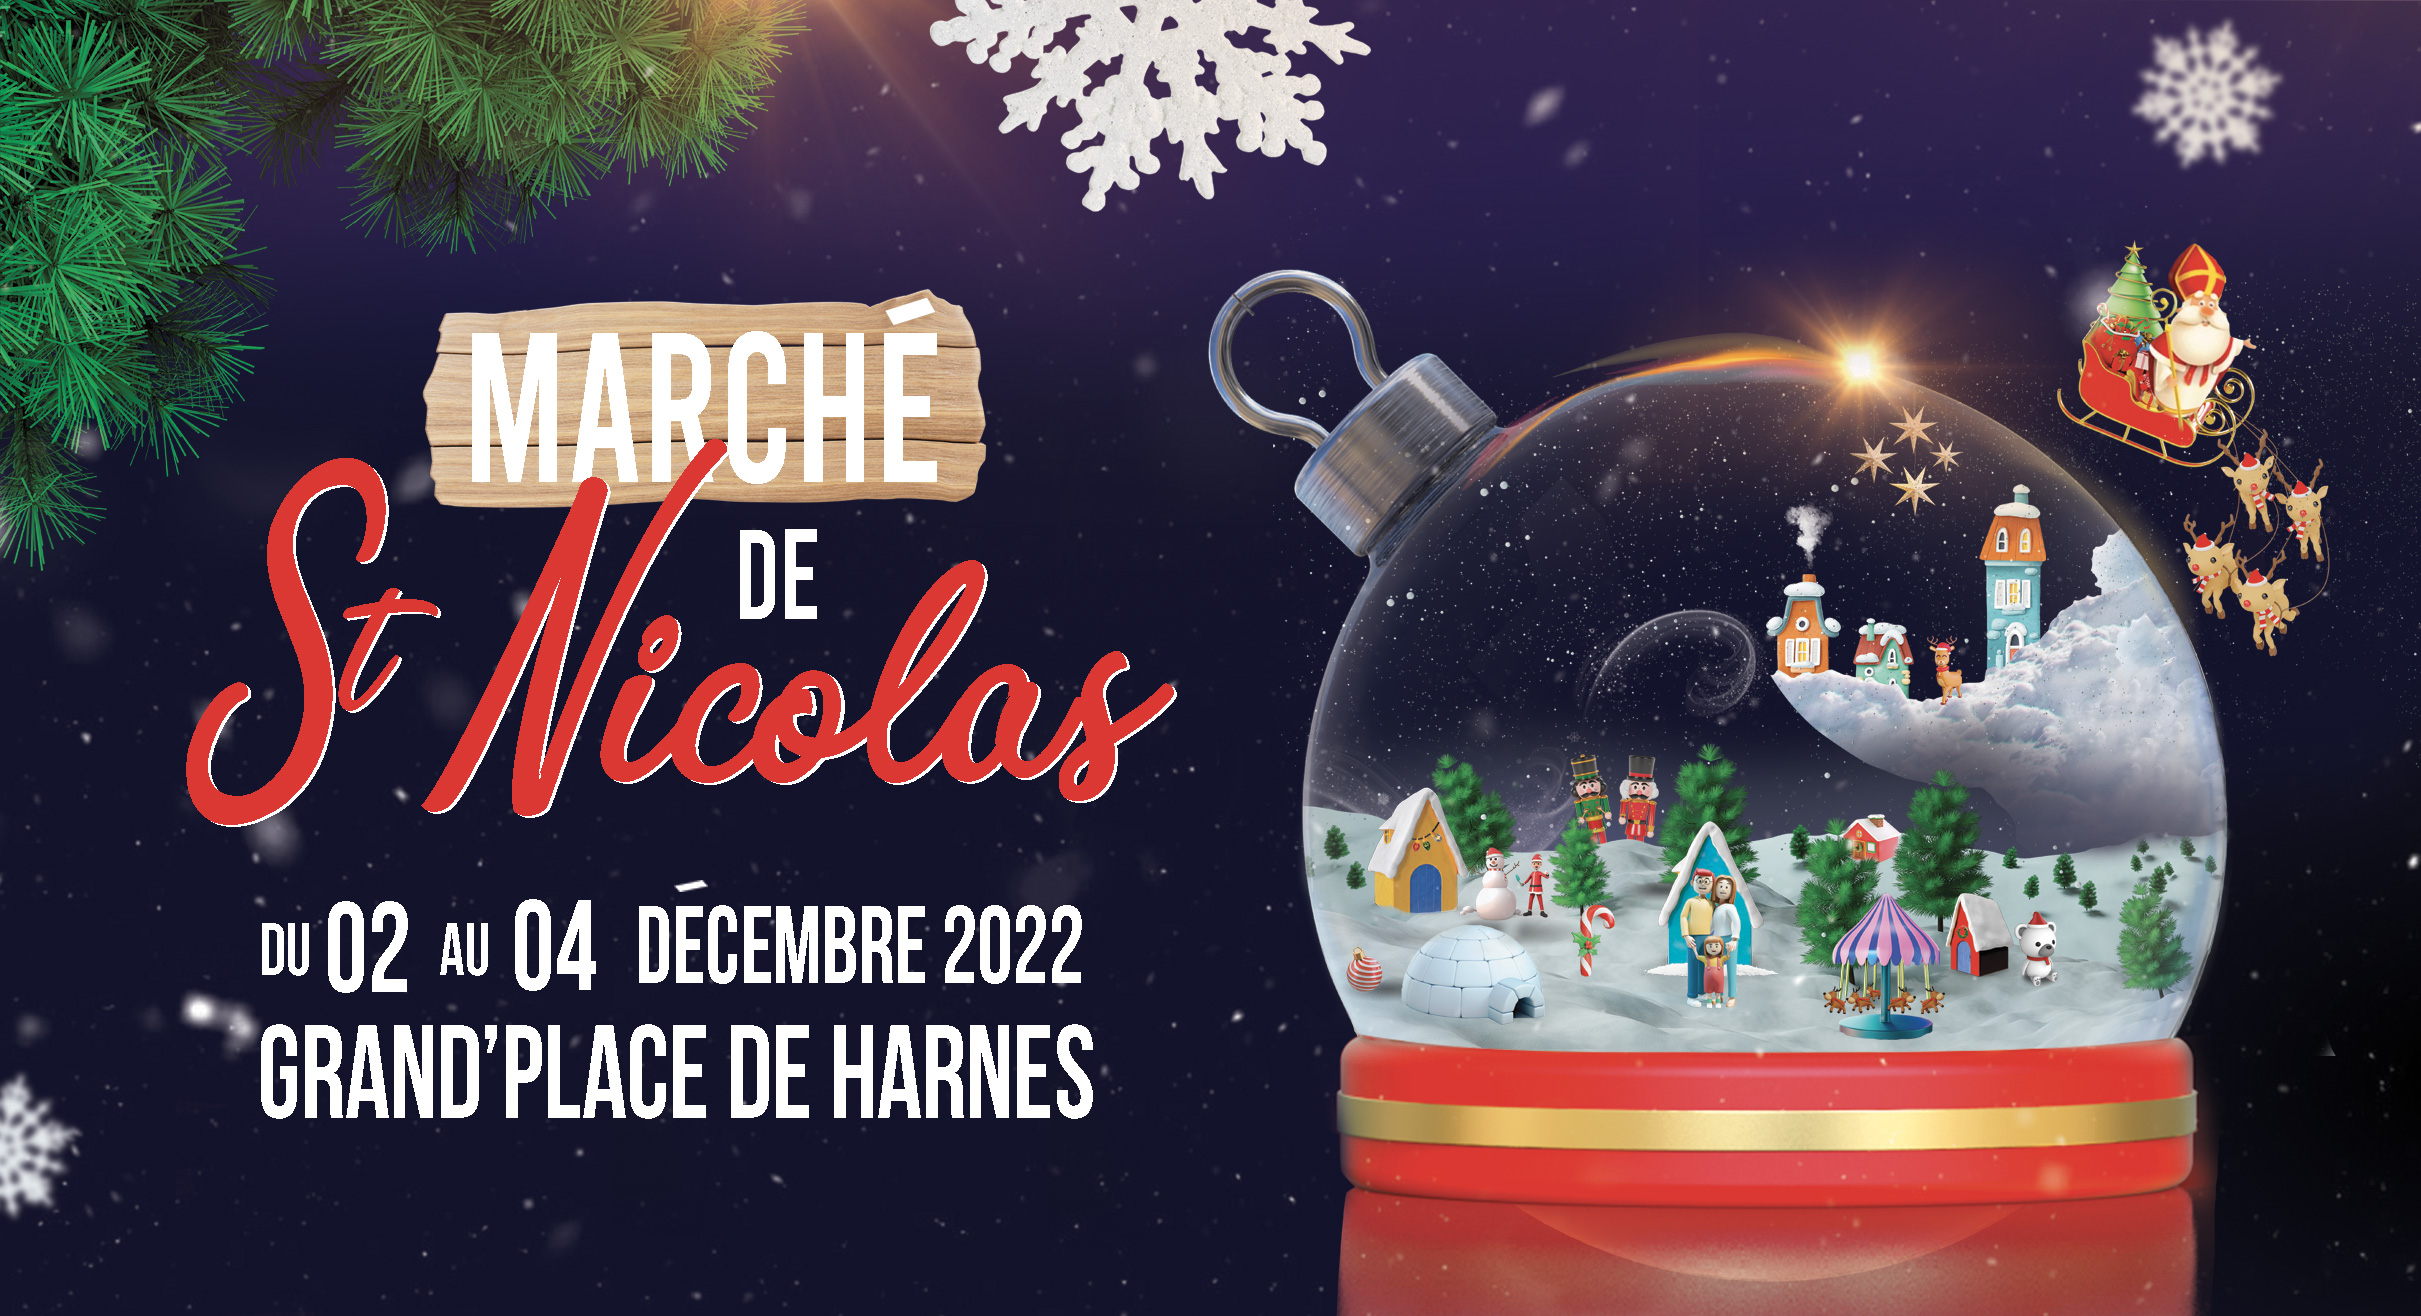 Marché de St Nicolas : Vivez la magie de Noël !